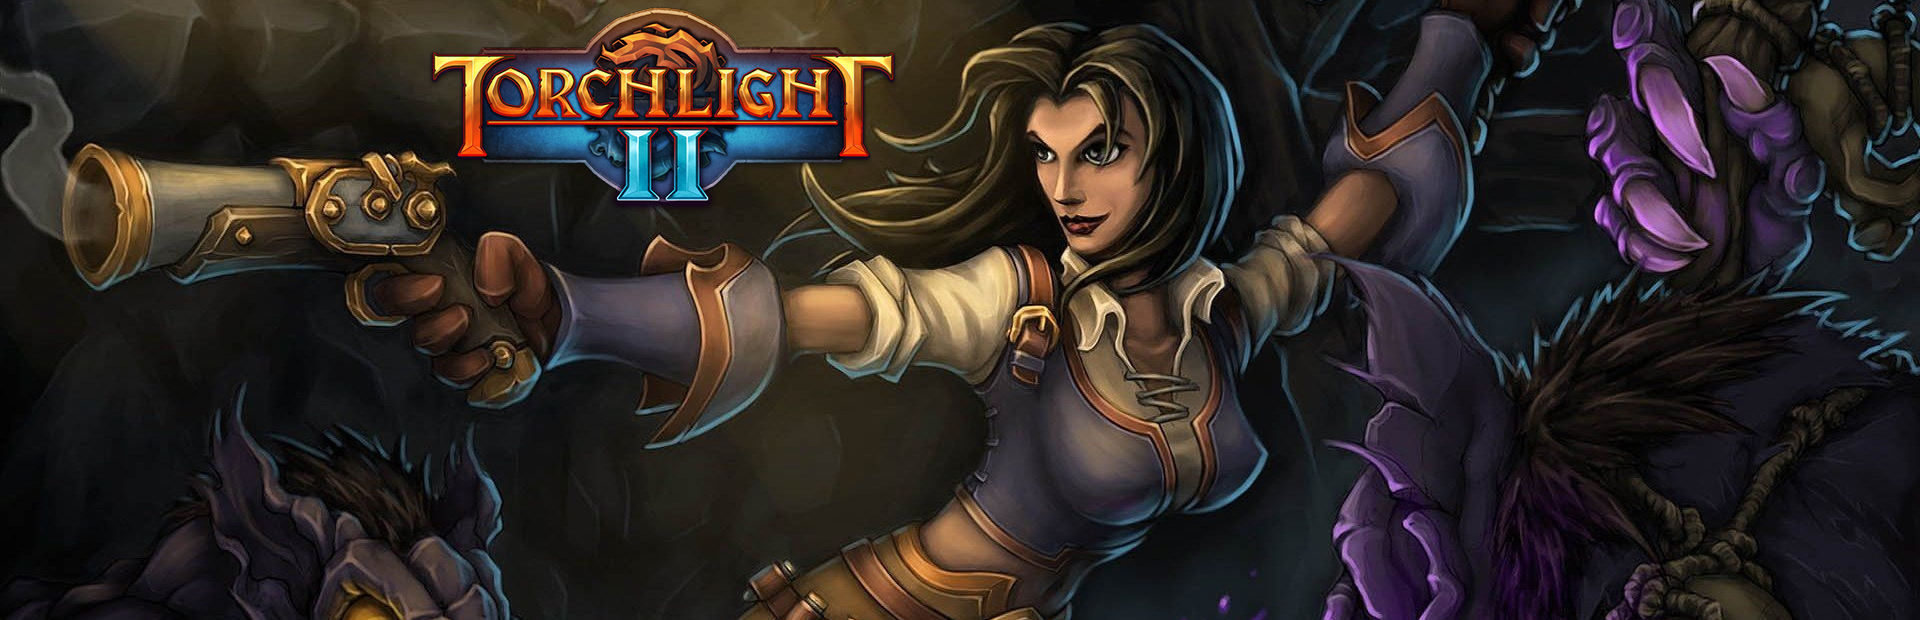 دانلود بازی Torchlight II برای کامپیوتر | گیمباتو